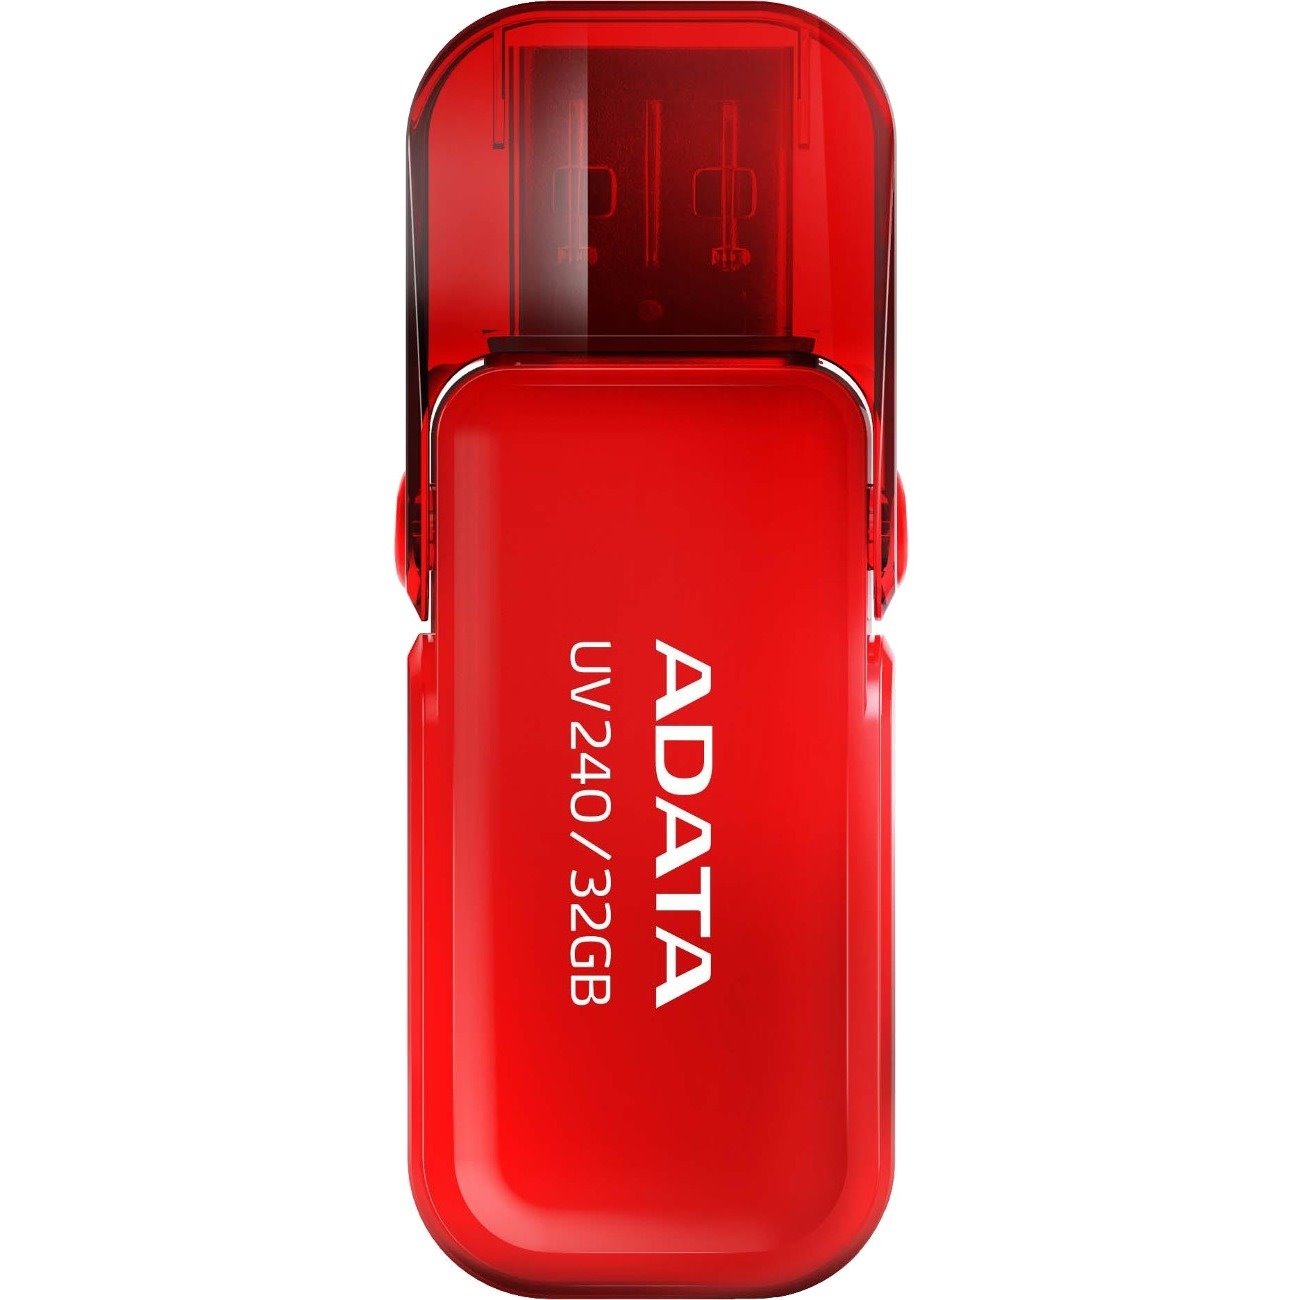 Adata Classic UV240 32GB USB 2.0 Flash Drive